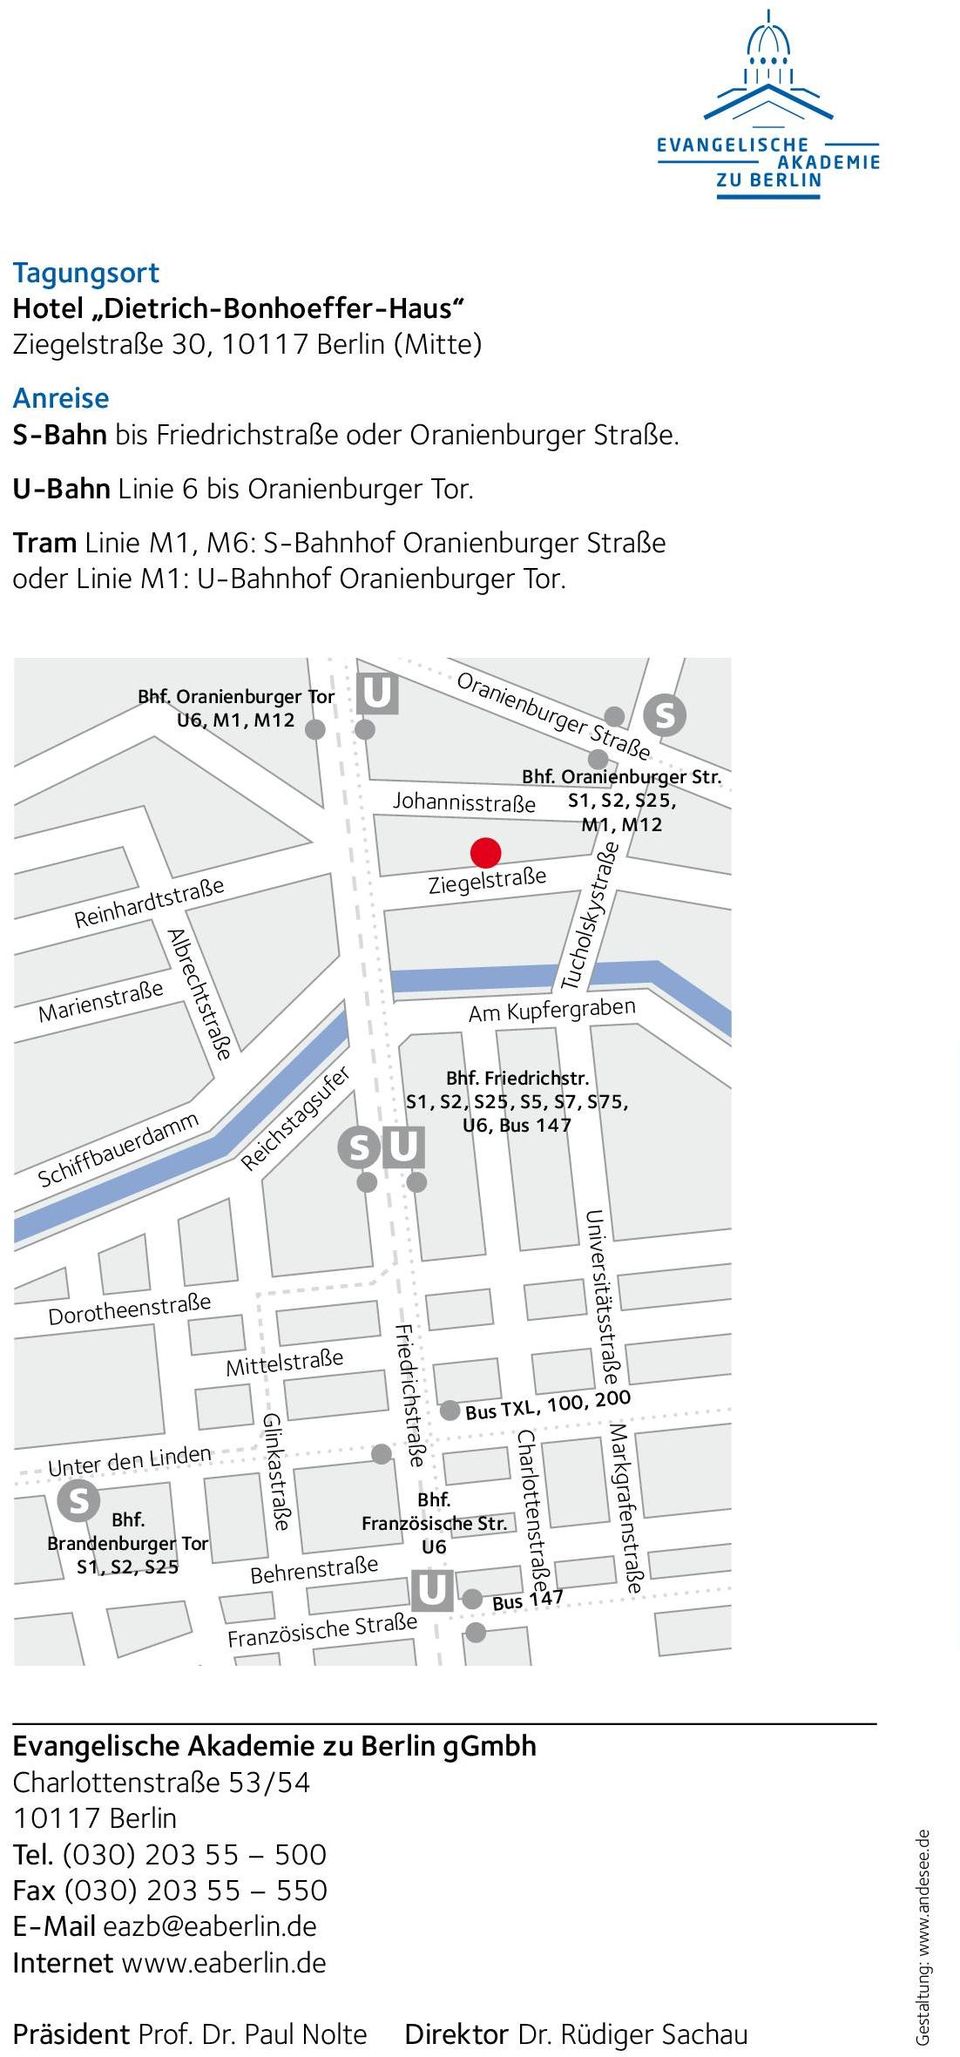 Oranienburger Tor U6, M1, M12 Oranienburger Straße Reinhardtstraße Marienstraße Johannisstraße Ziegelstraße Oranienburger Str.